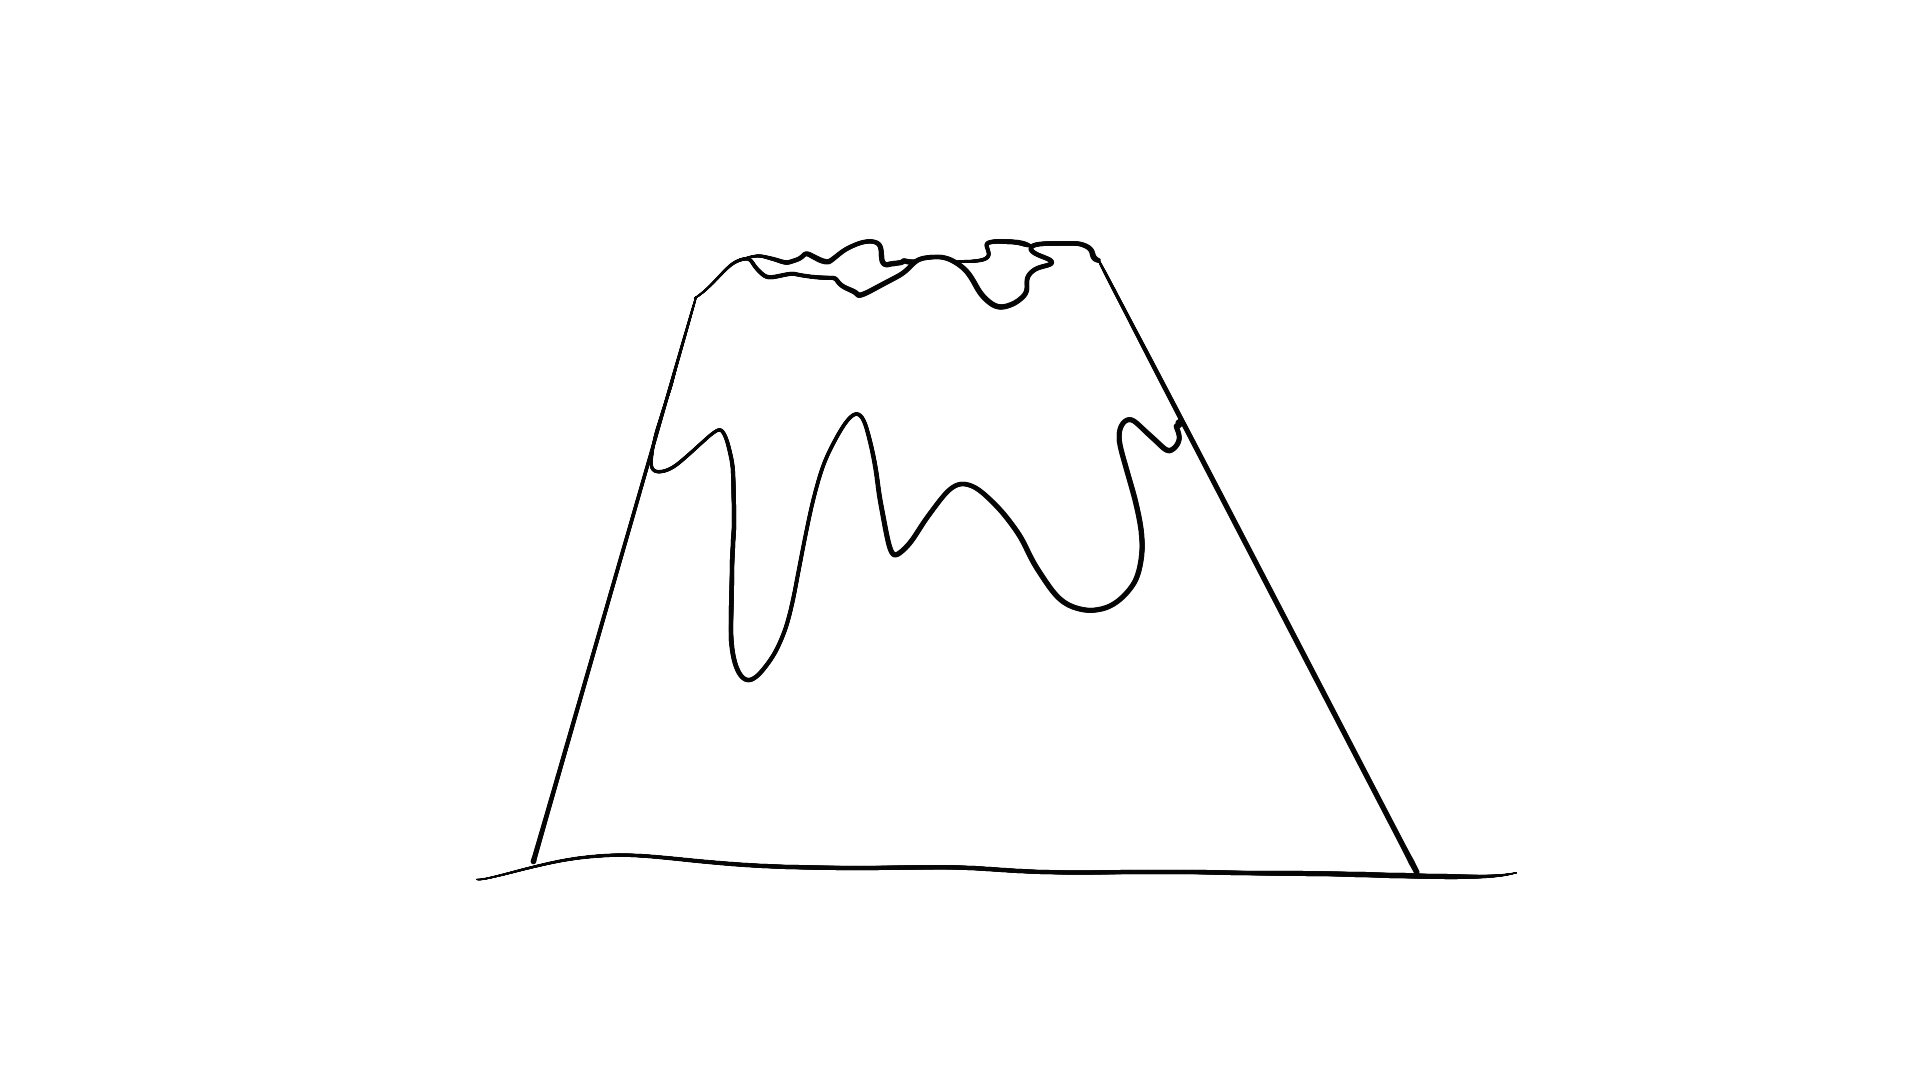 火山的画法铅笔画图片